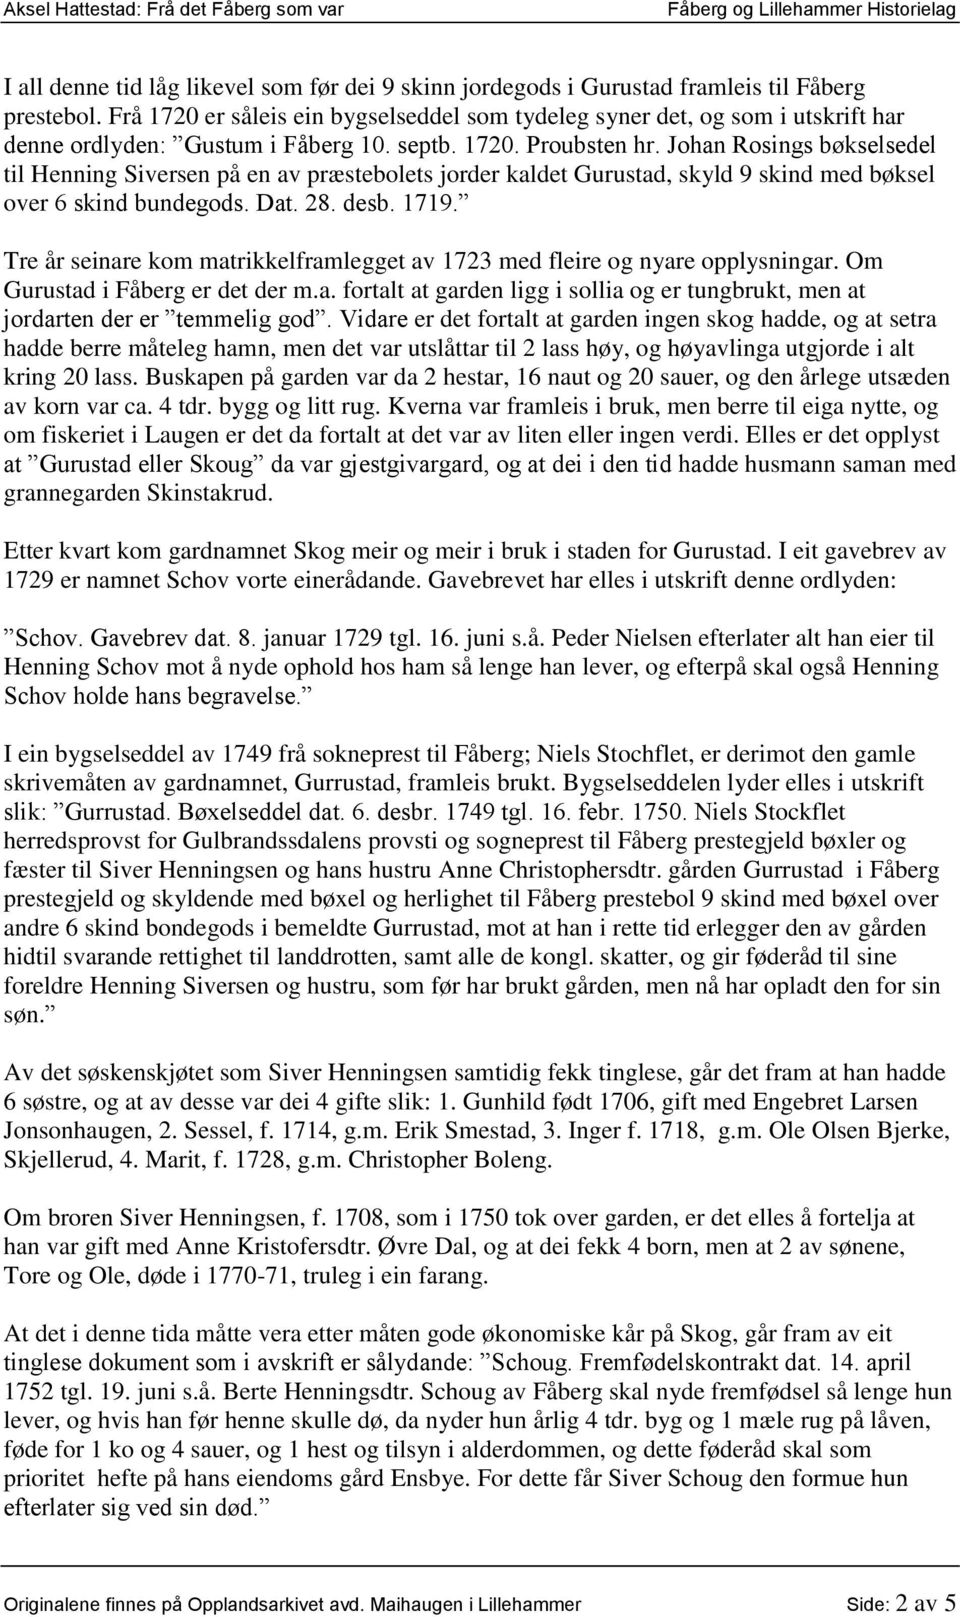 Johan Rosings bøkselsedel til Henning Siversen på en av præstebolets jorder kaldet Gurustad, skyld 9 skind med bøksel over 6 skind bundegods. Dat. 28. desb. 1719.